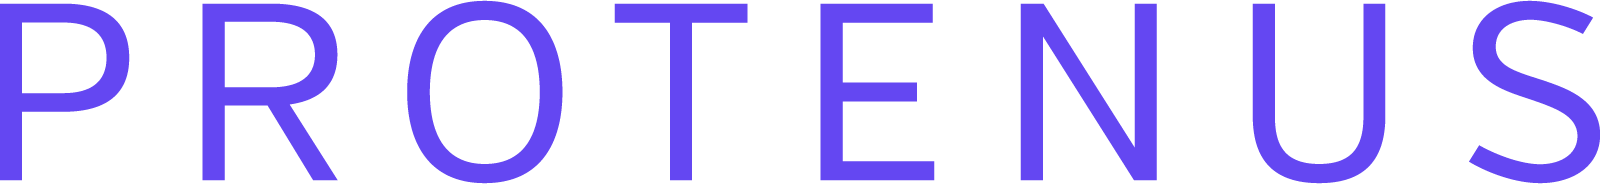 Protenus, Inc. Company Logo